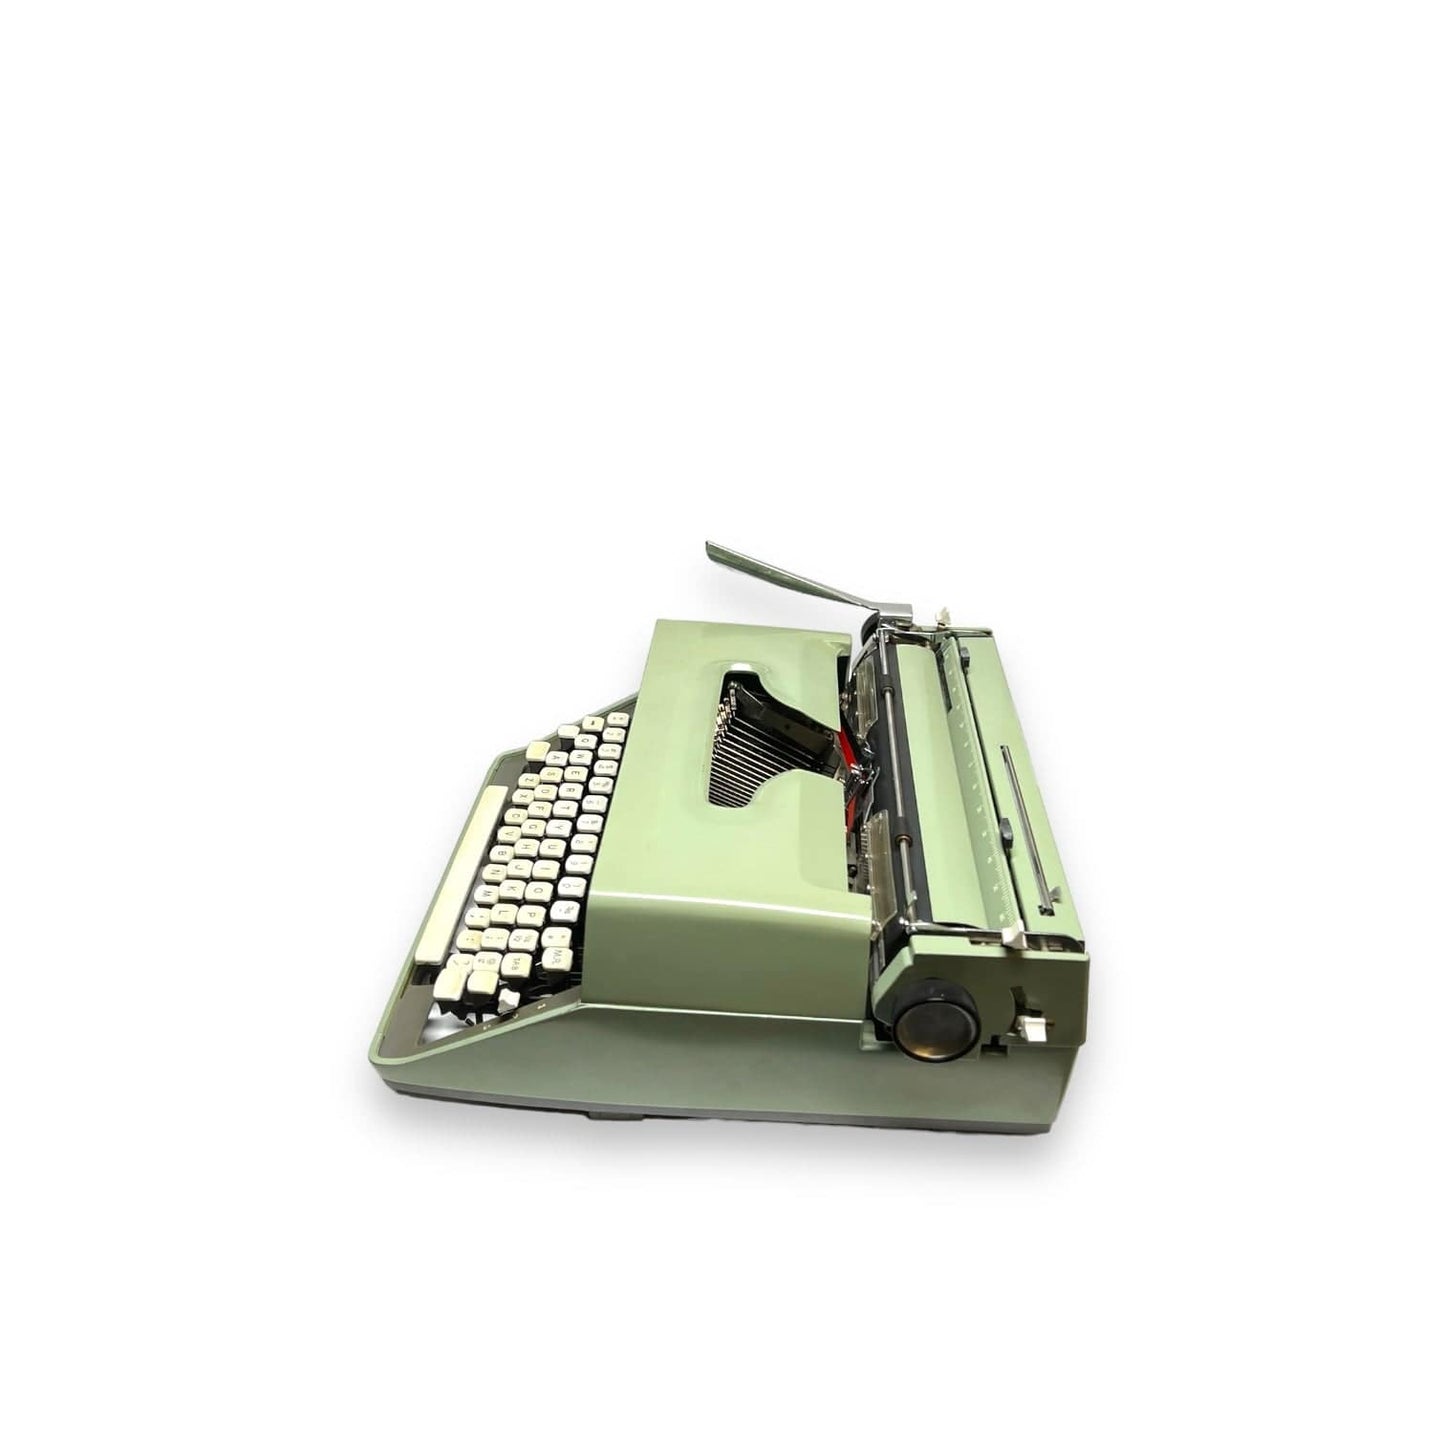 Toronto Typewriters Portable Typewriter Remington 11 Typewriter